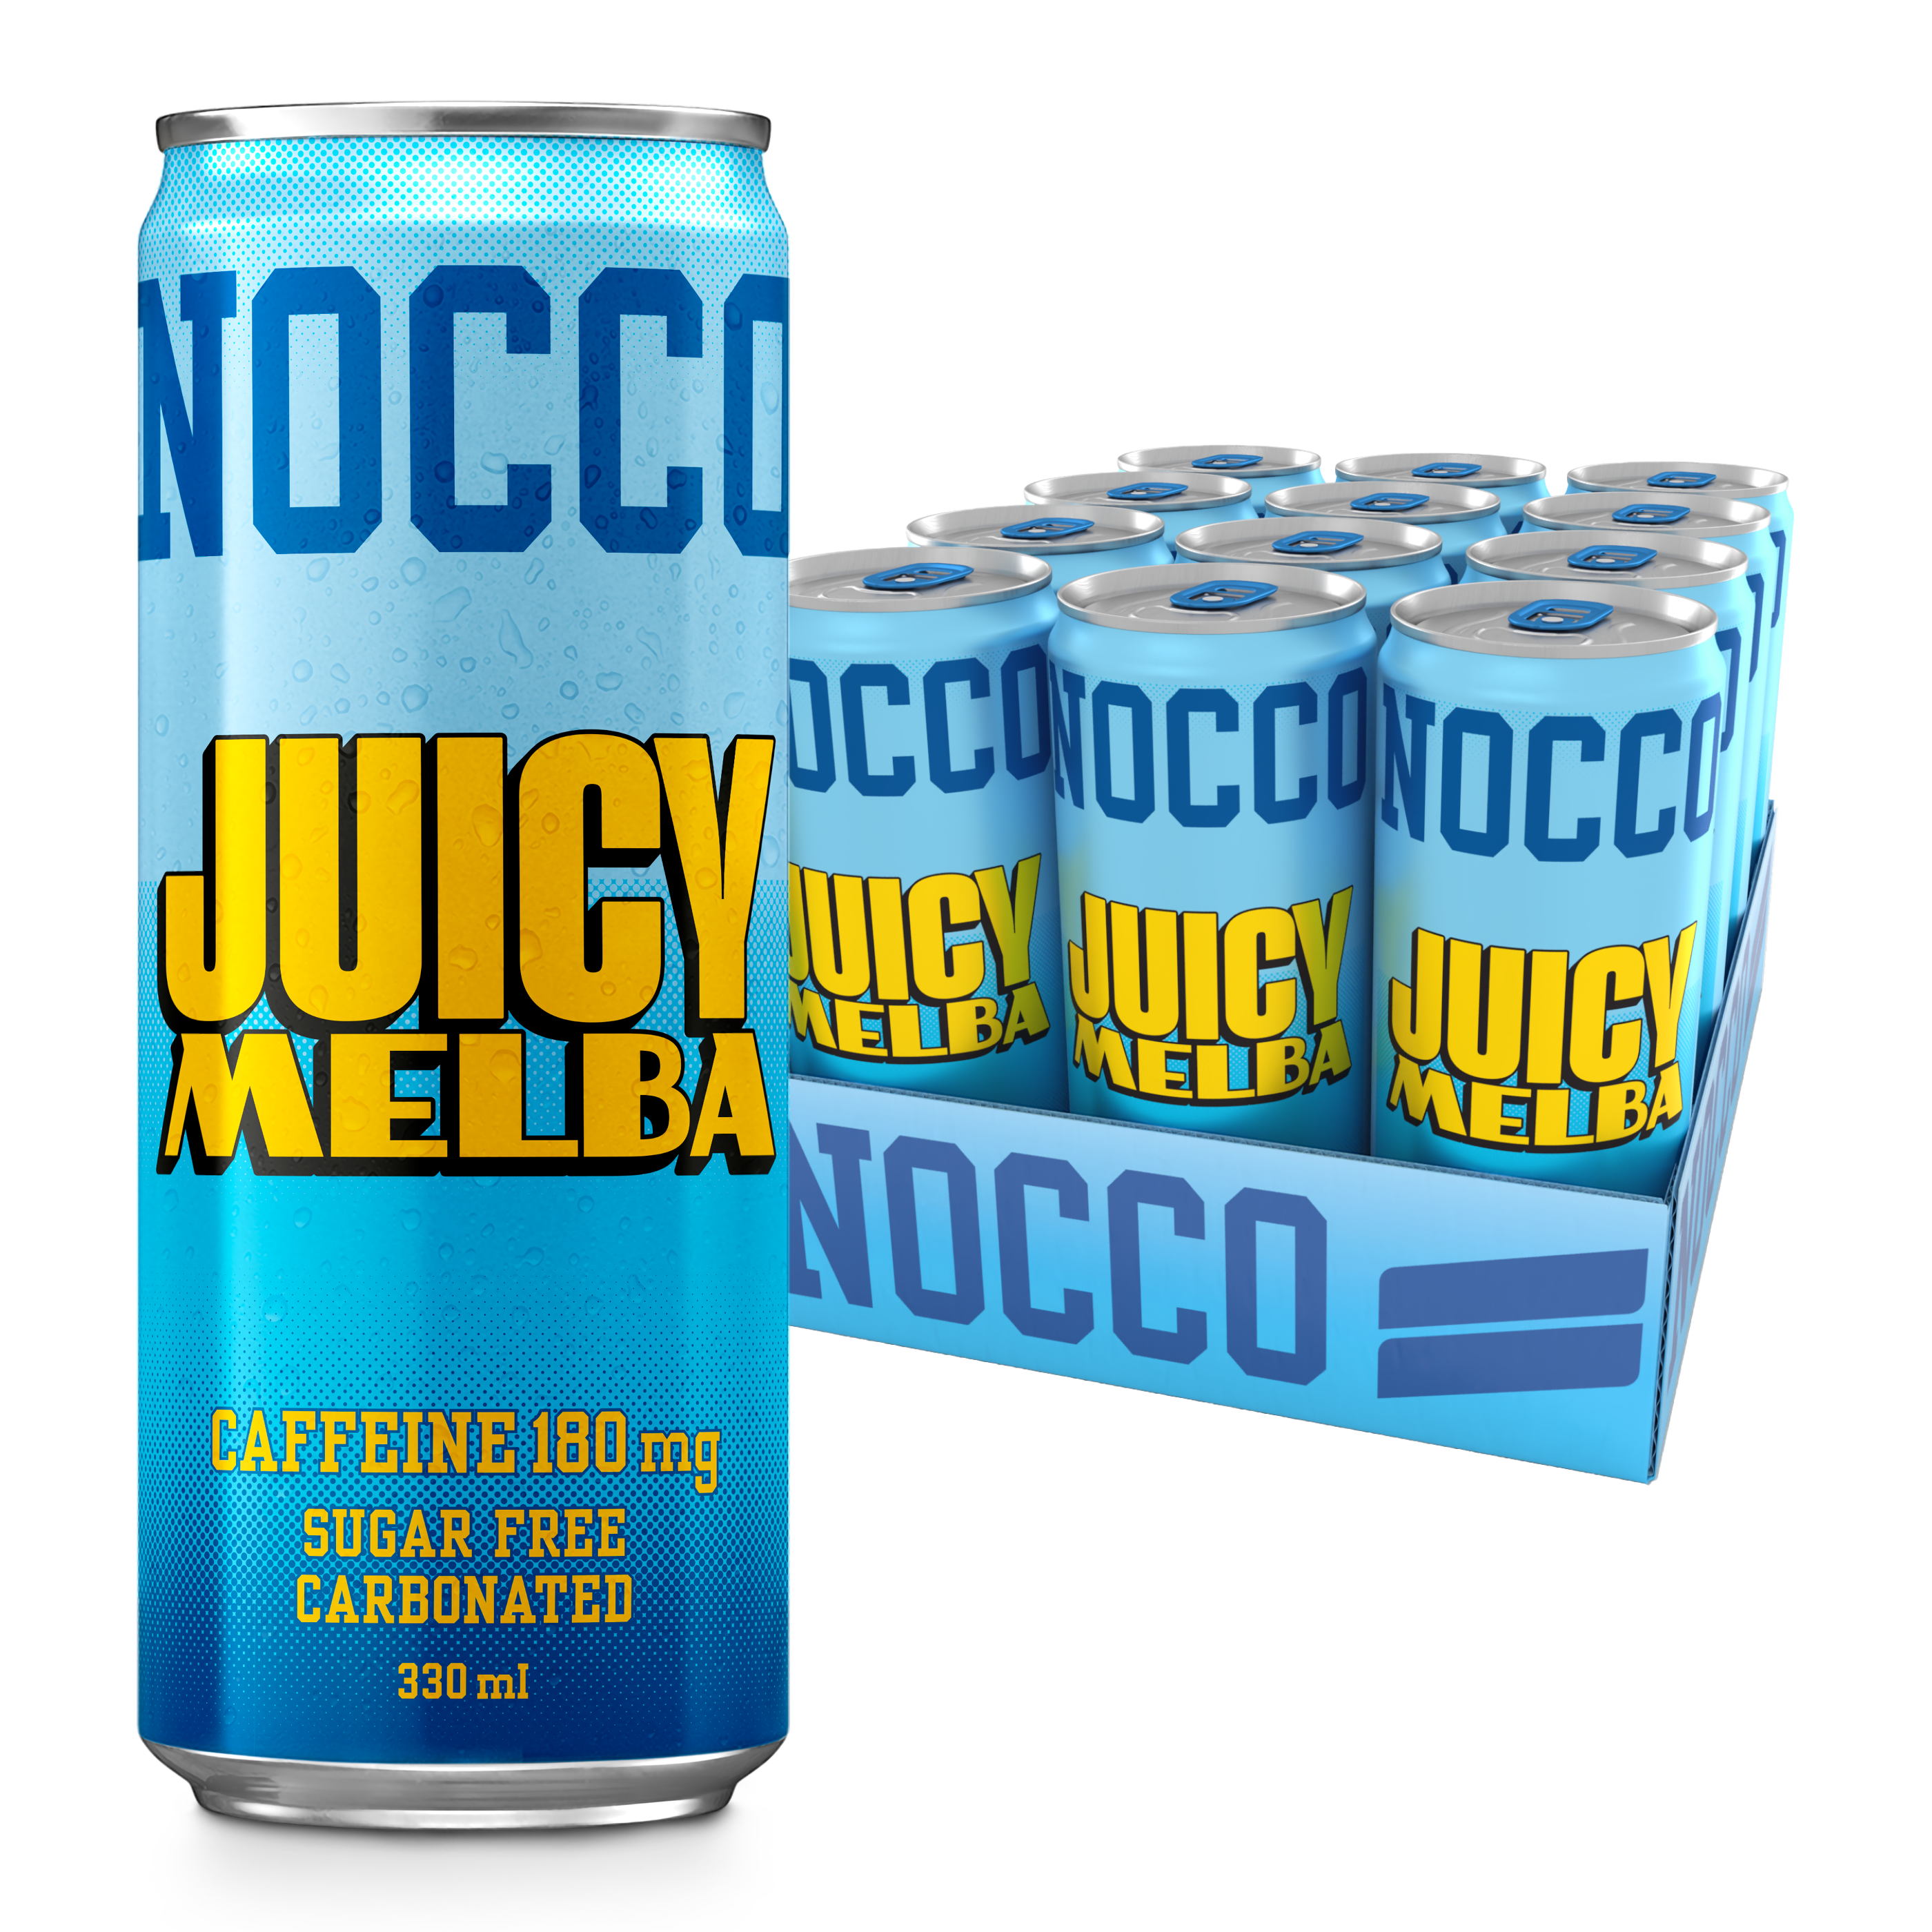 nocco Juicy melba 12 pack